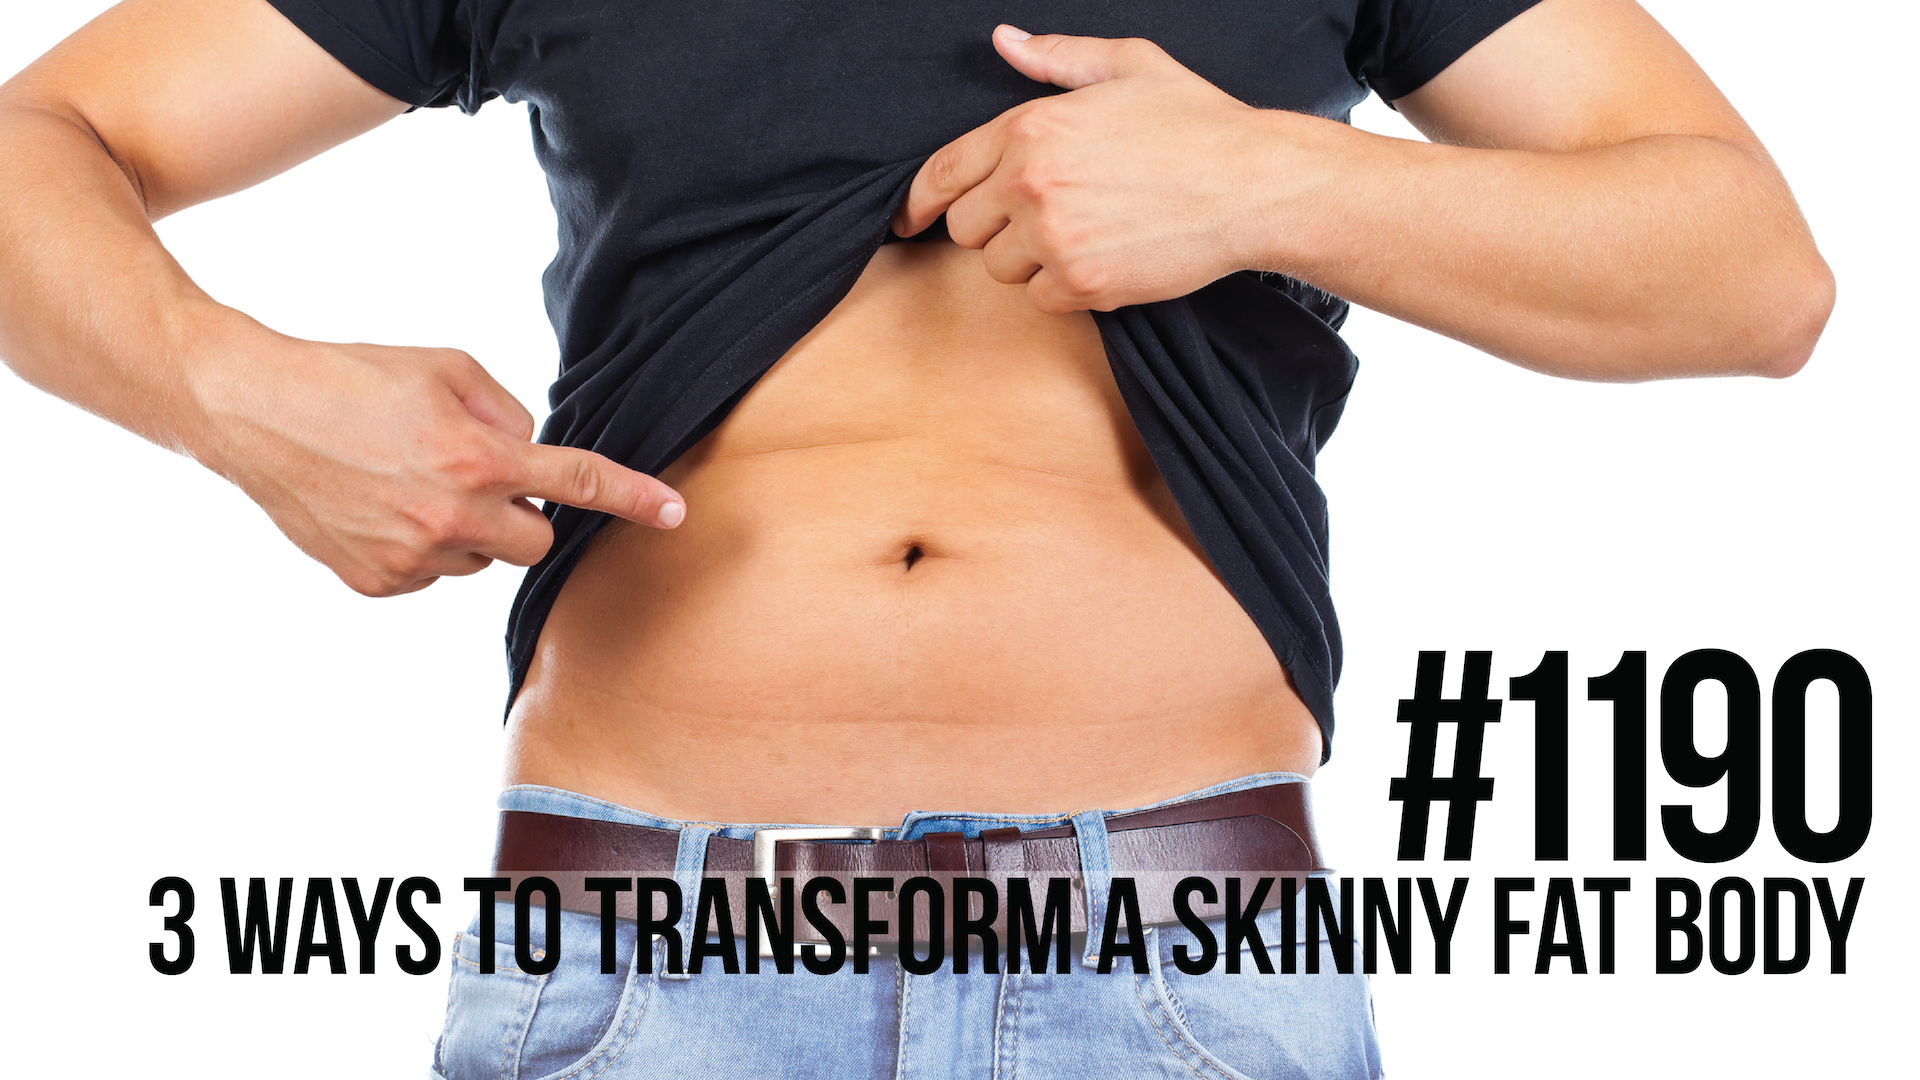 1190: 3 Ways to Transform a Skinny Fat Body